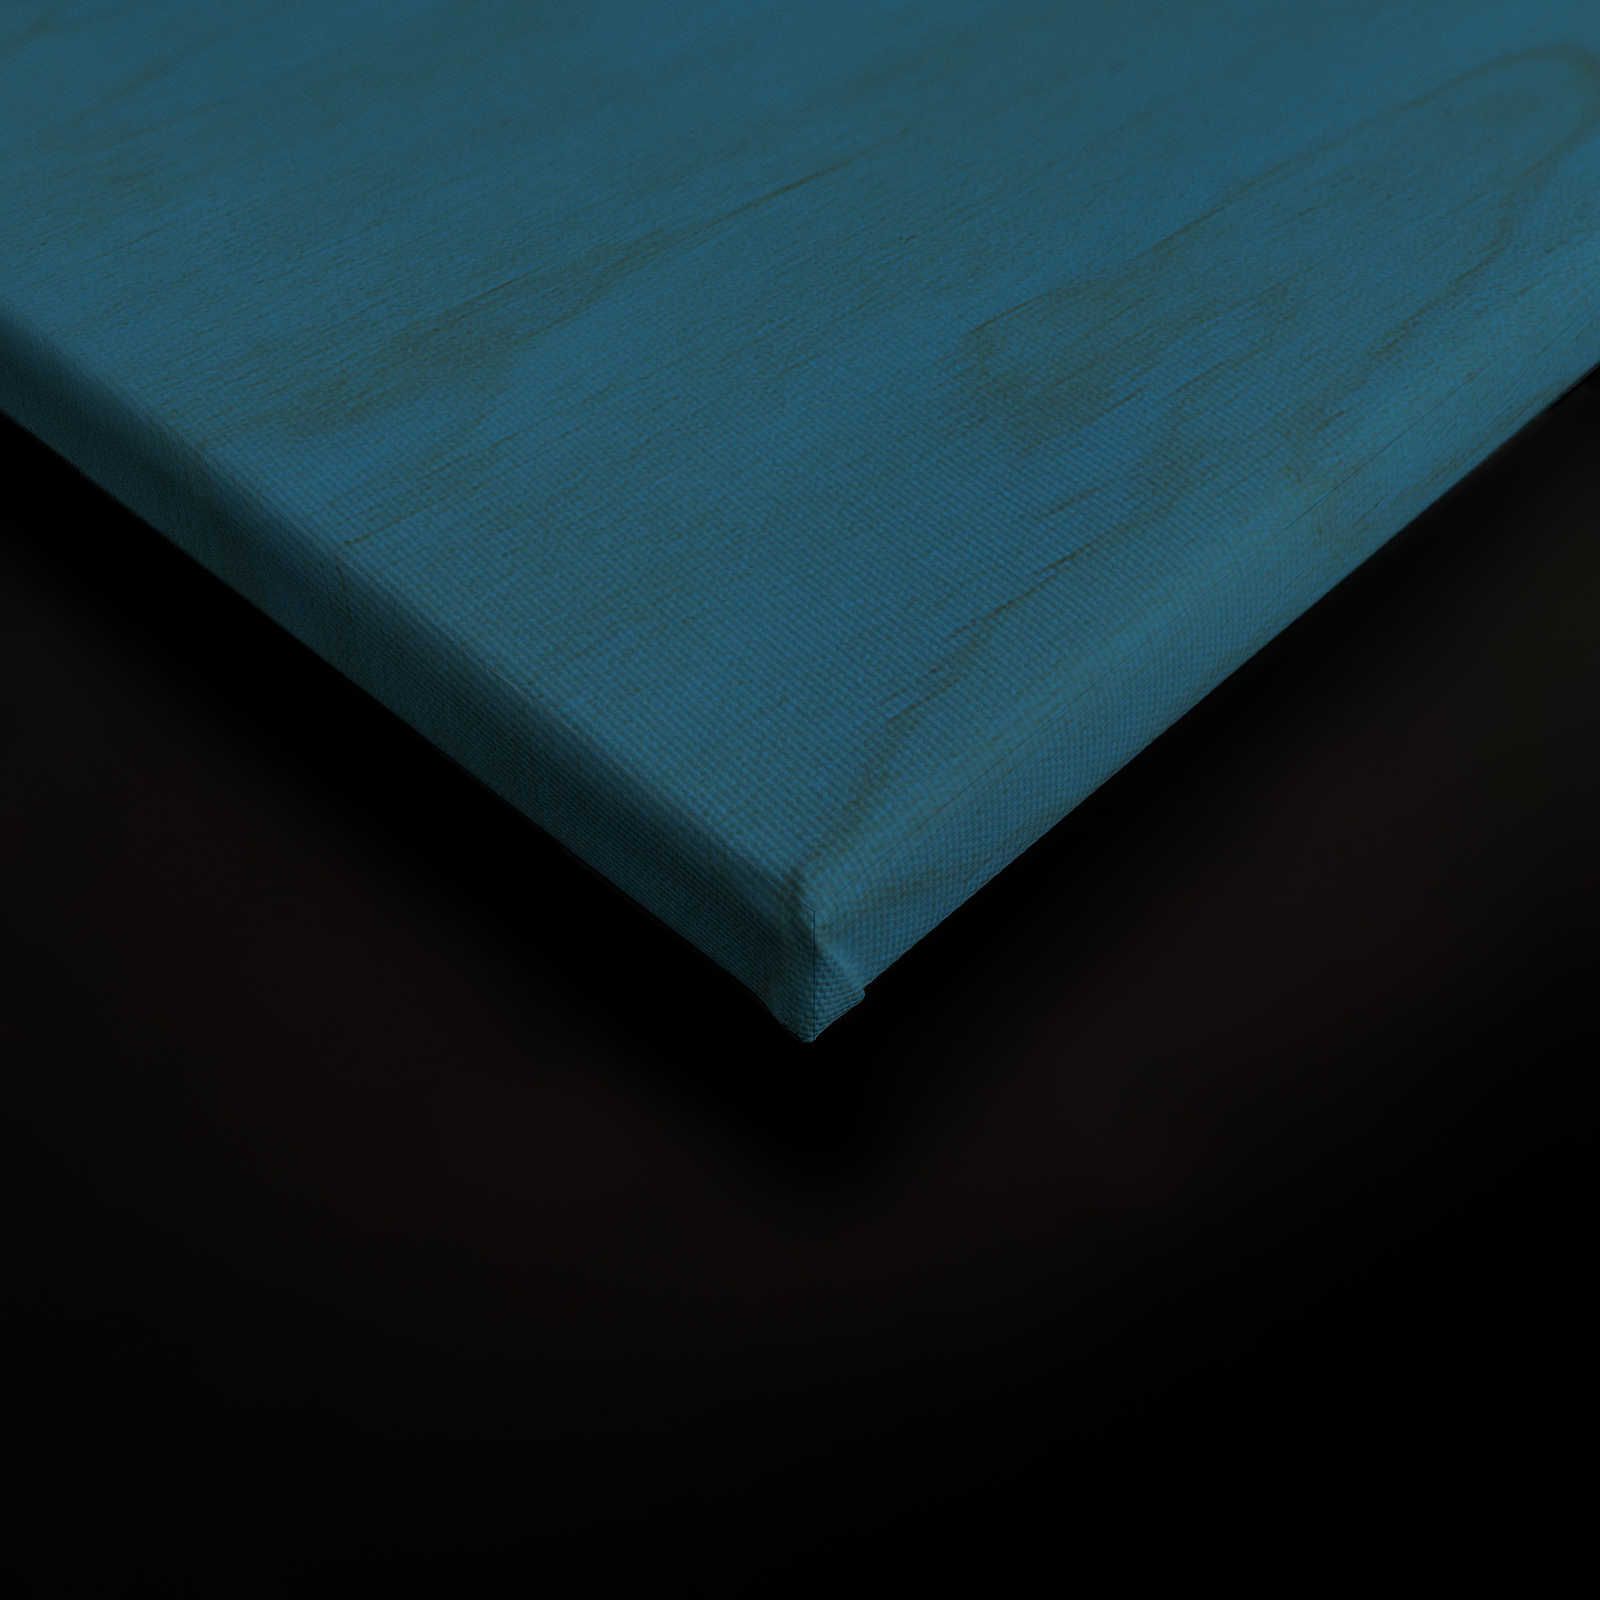             Overseas 3 - Toile bleue design ethnique avec masque - 0,90 m x 0,60 m
        